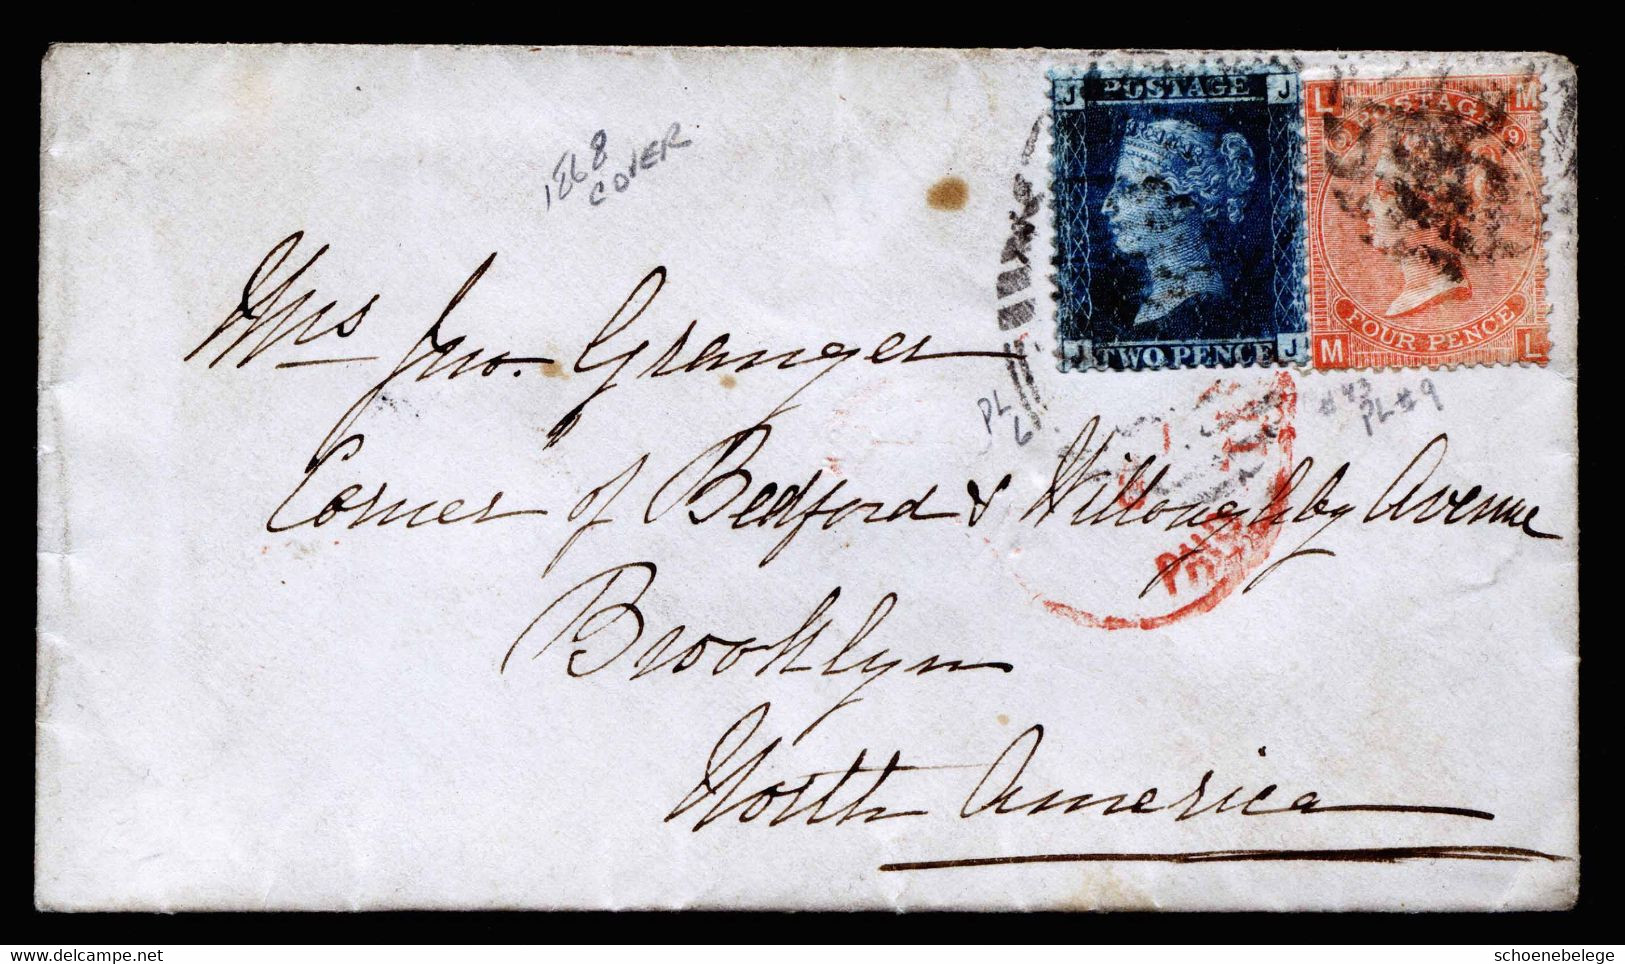 A6805) UK Grossbritannien - Brief 1868 M. Mi.17 Und 24 (Platte 9) Nach Brooklyn / USA - Brieven En Documenten